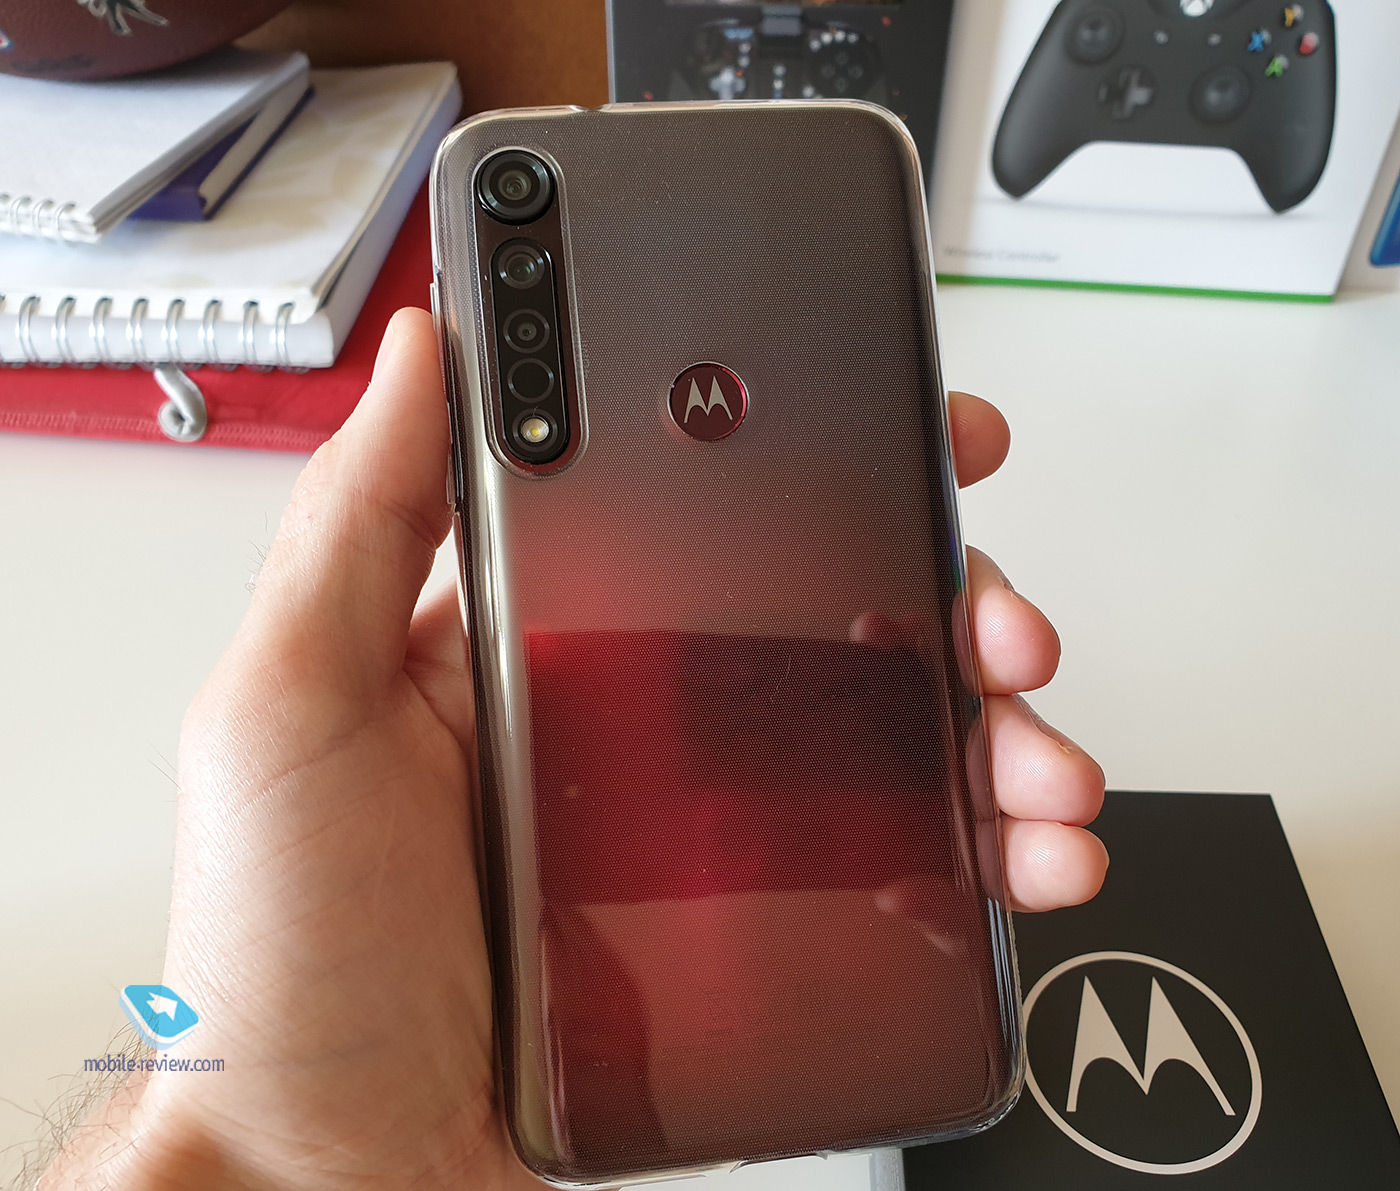   Motorola G8 Plus